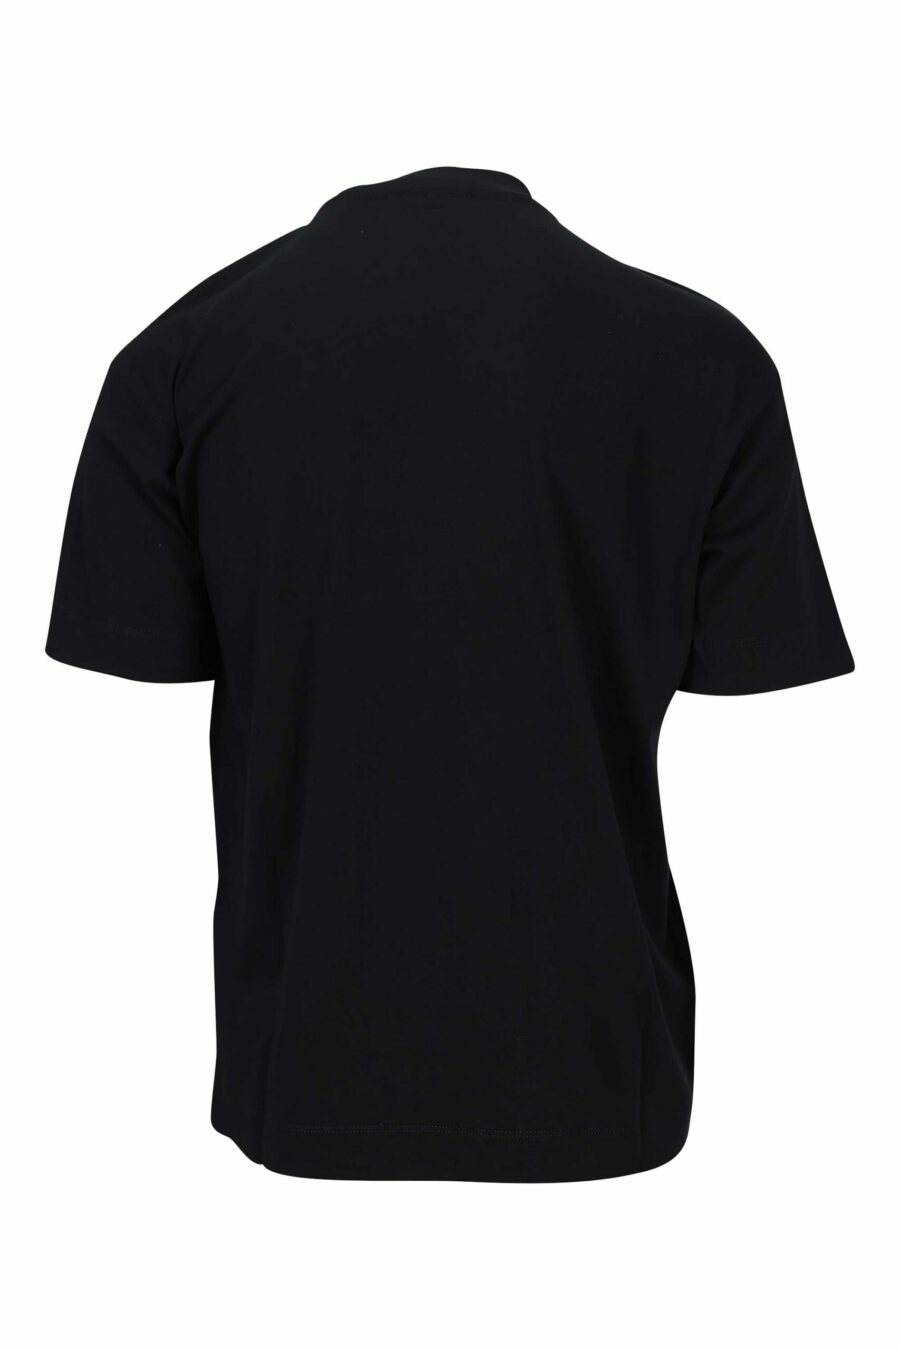 Camiseta negra con maxilogo águila monocromática - 8057970432920 1 scaled